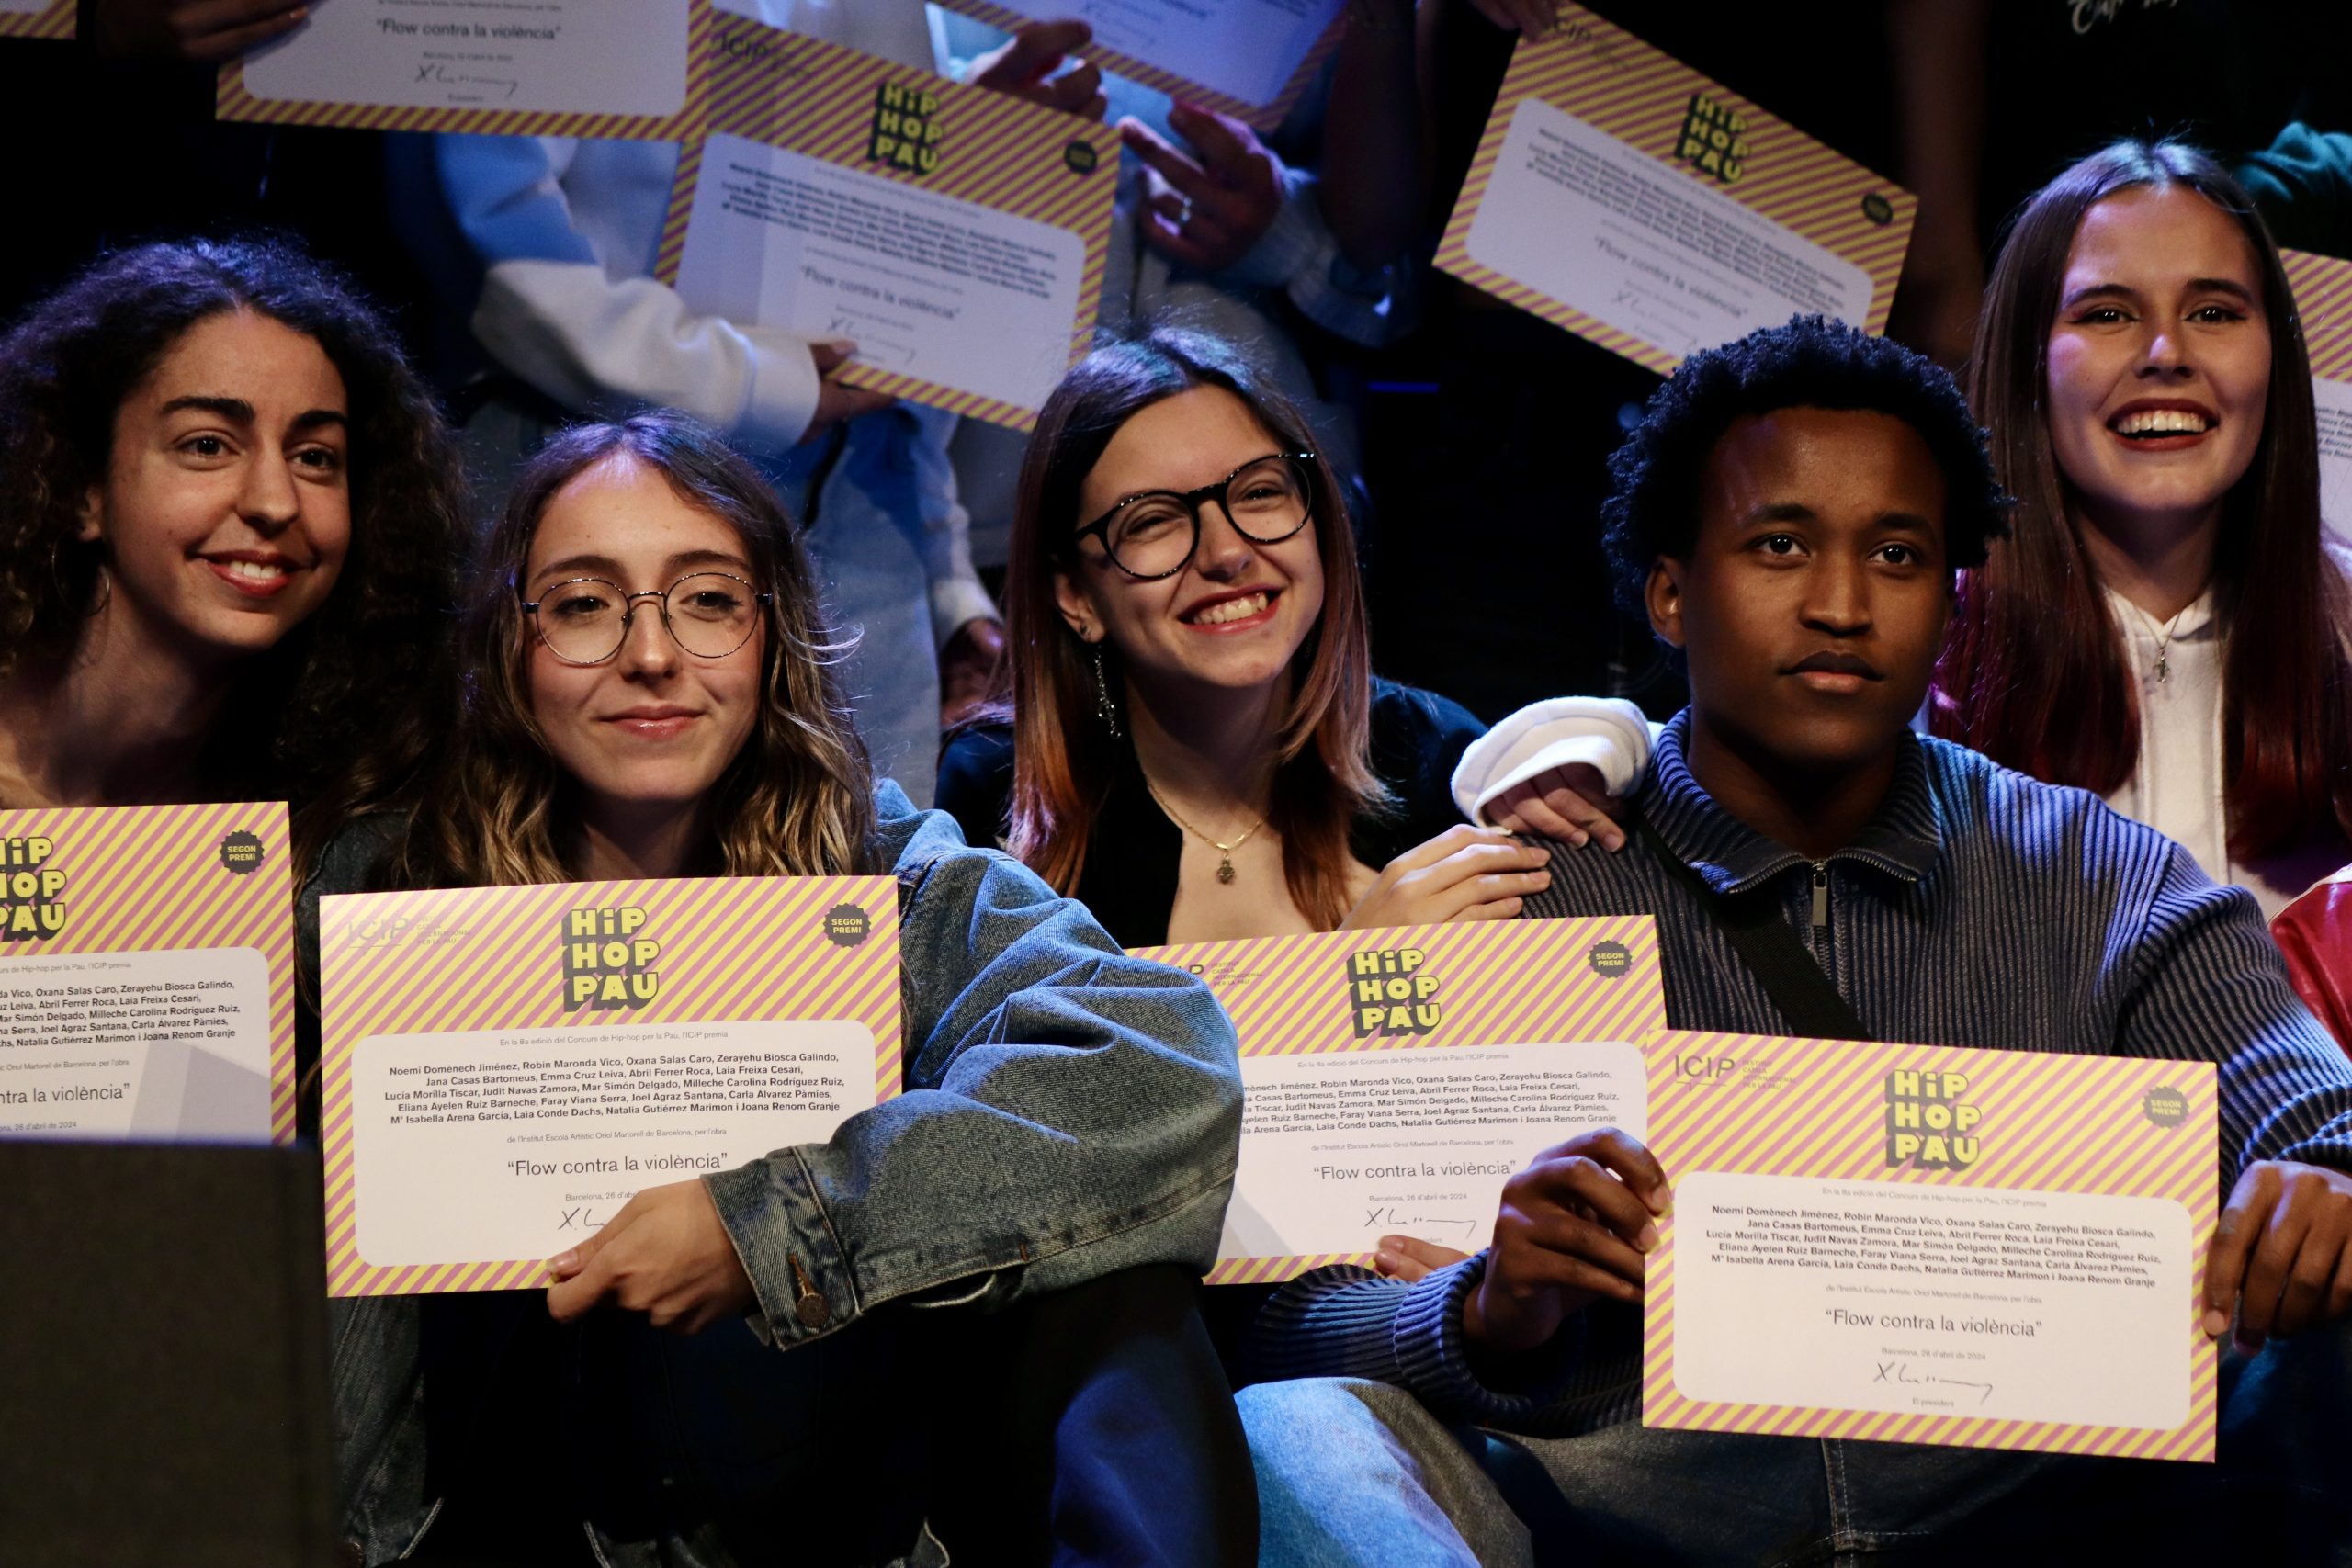 L’ICIP lliura els premis del 8è Concurs #HipHopPau, en el qual han participat prop de 500 joves de Catalunya